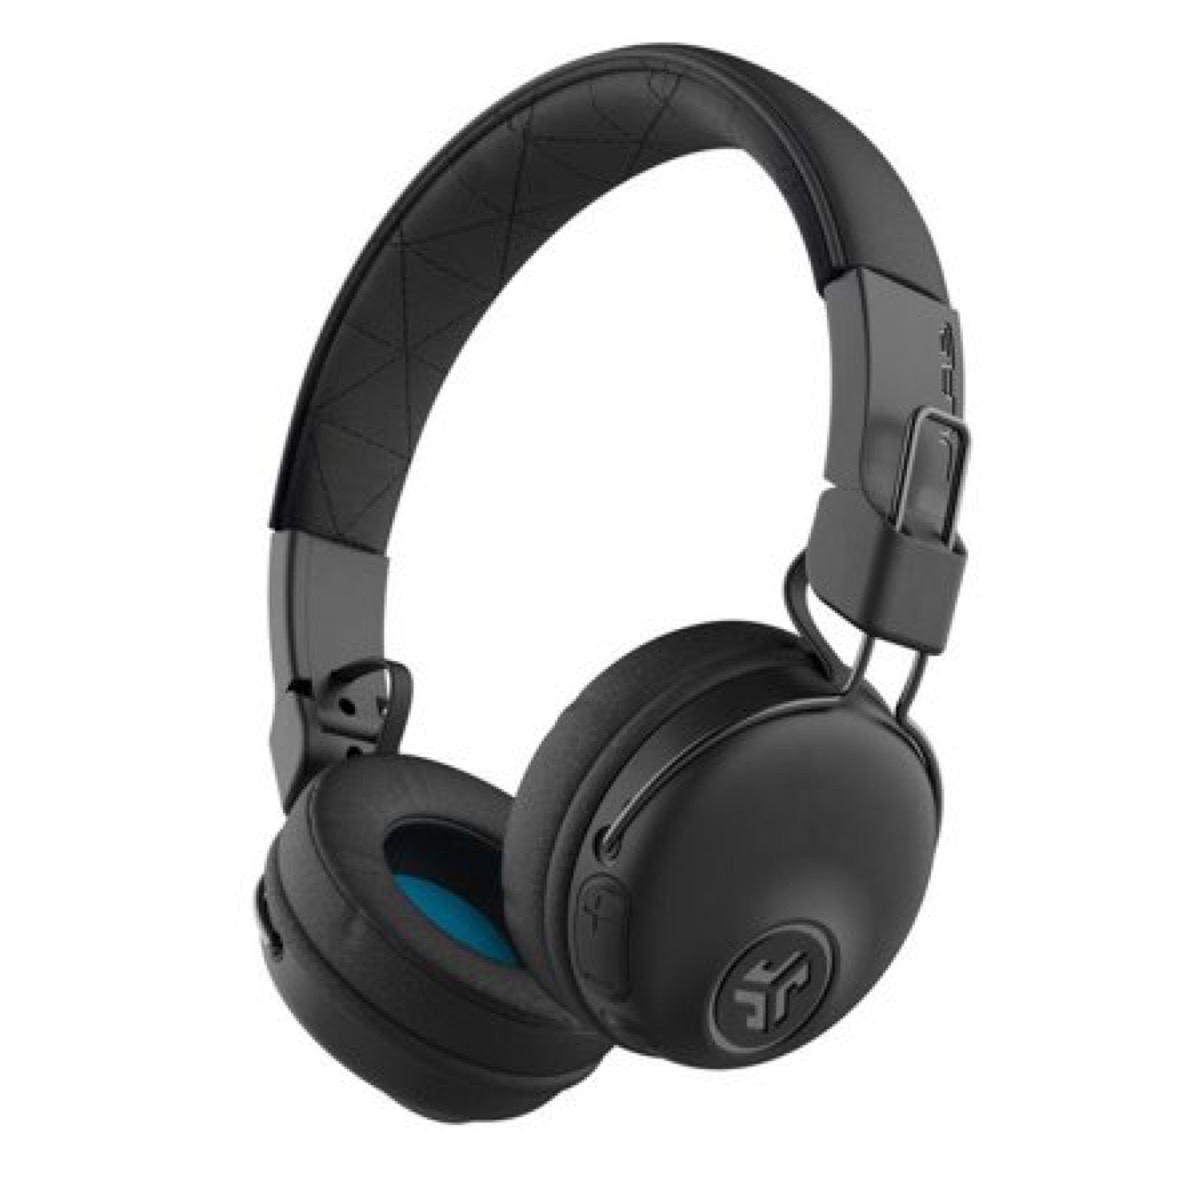 black over ear headphones on white background